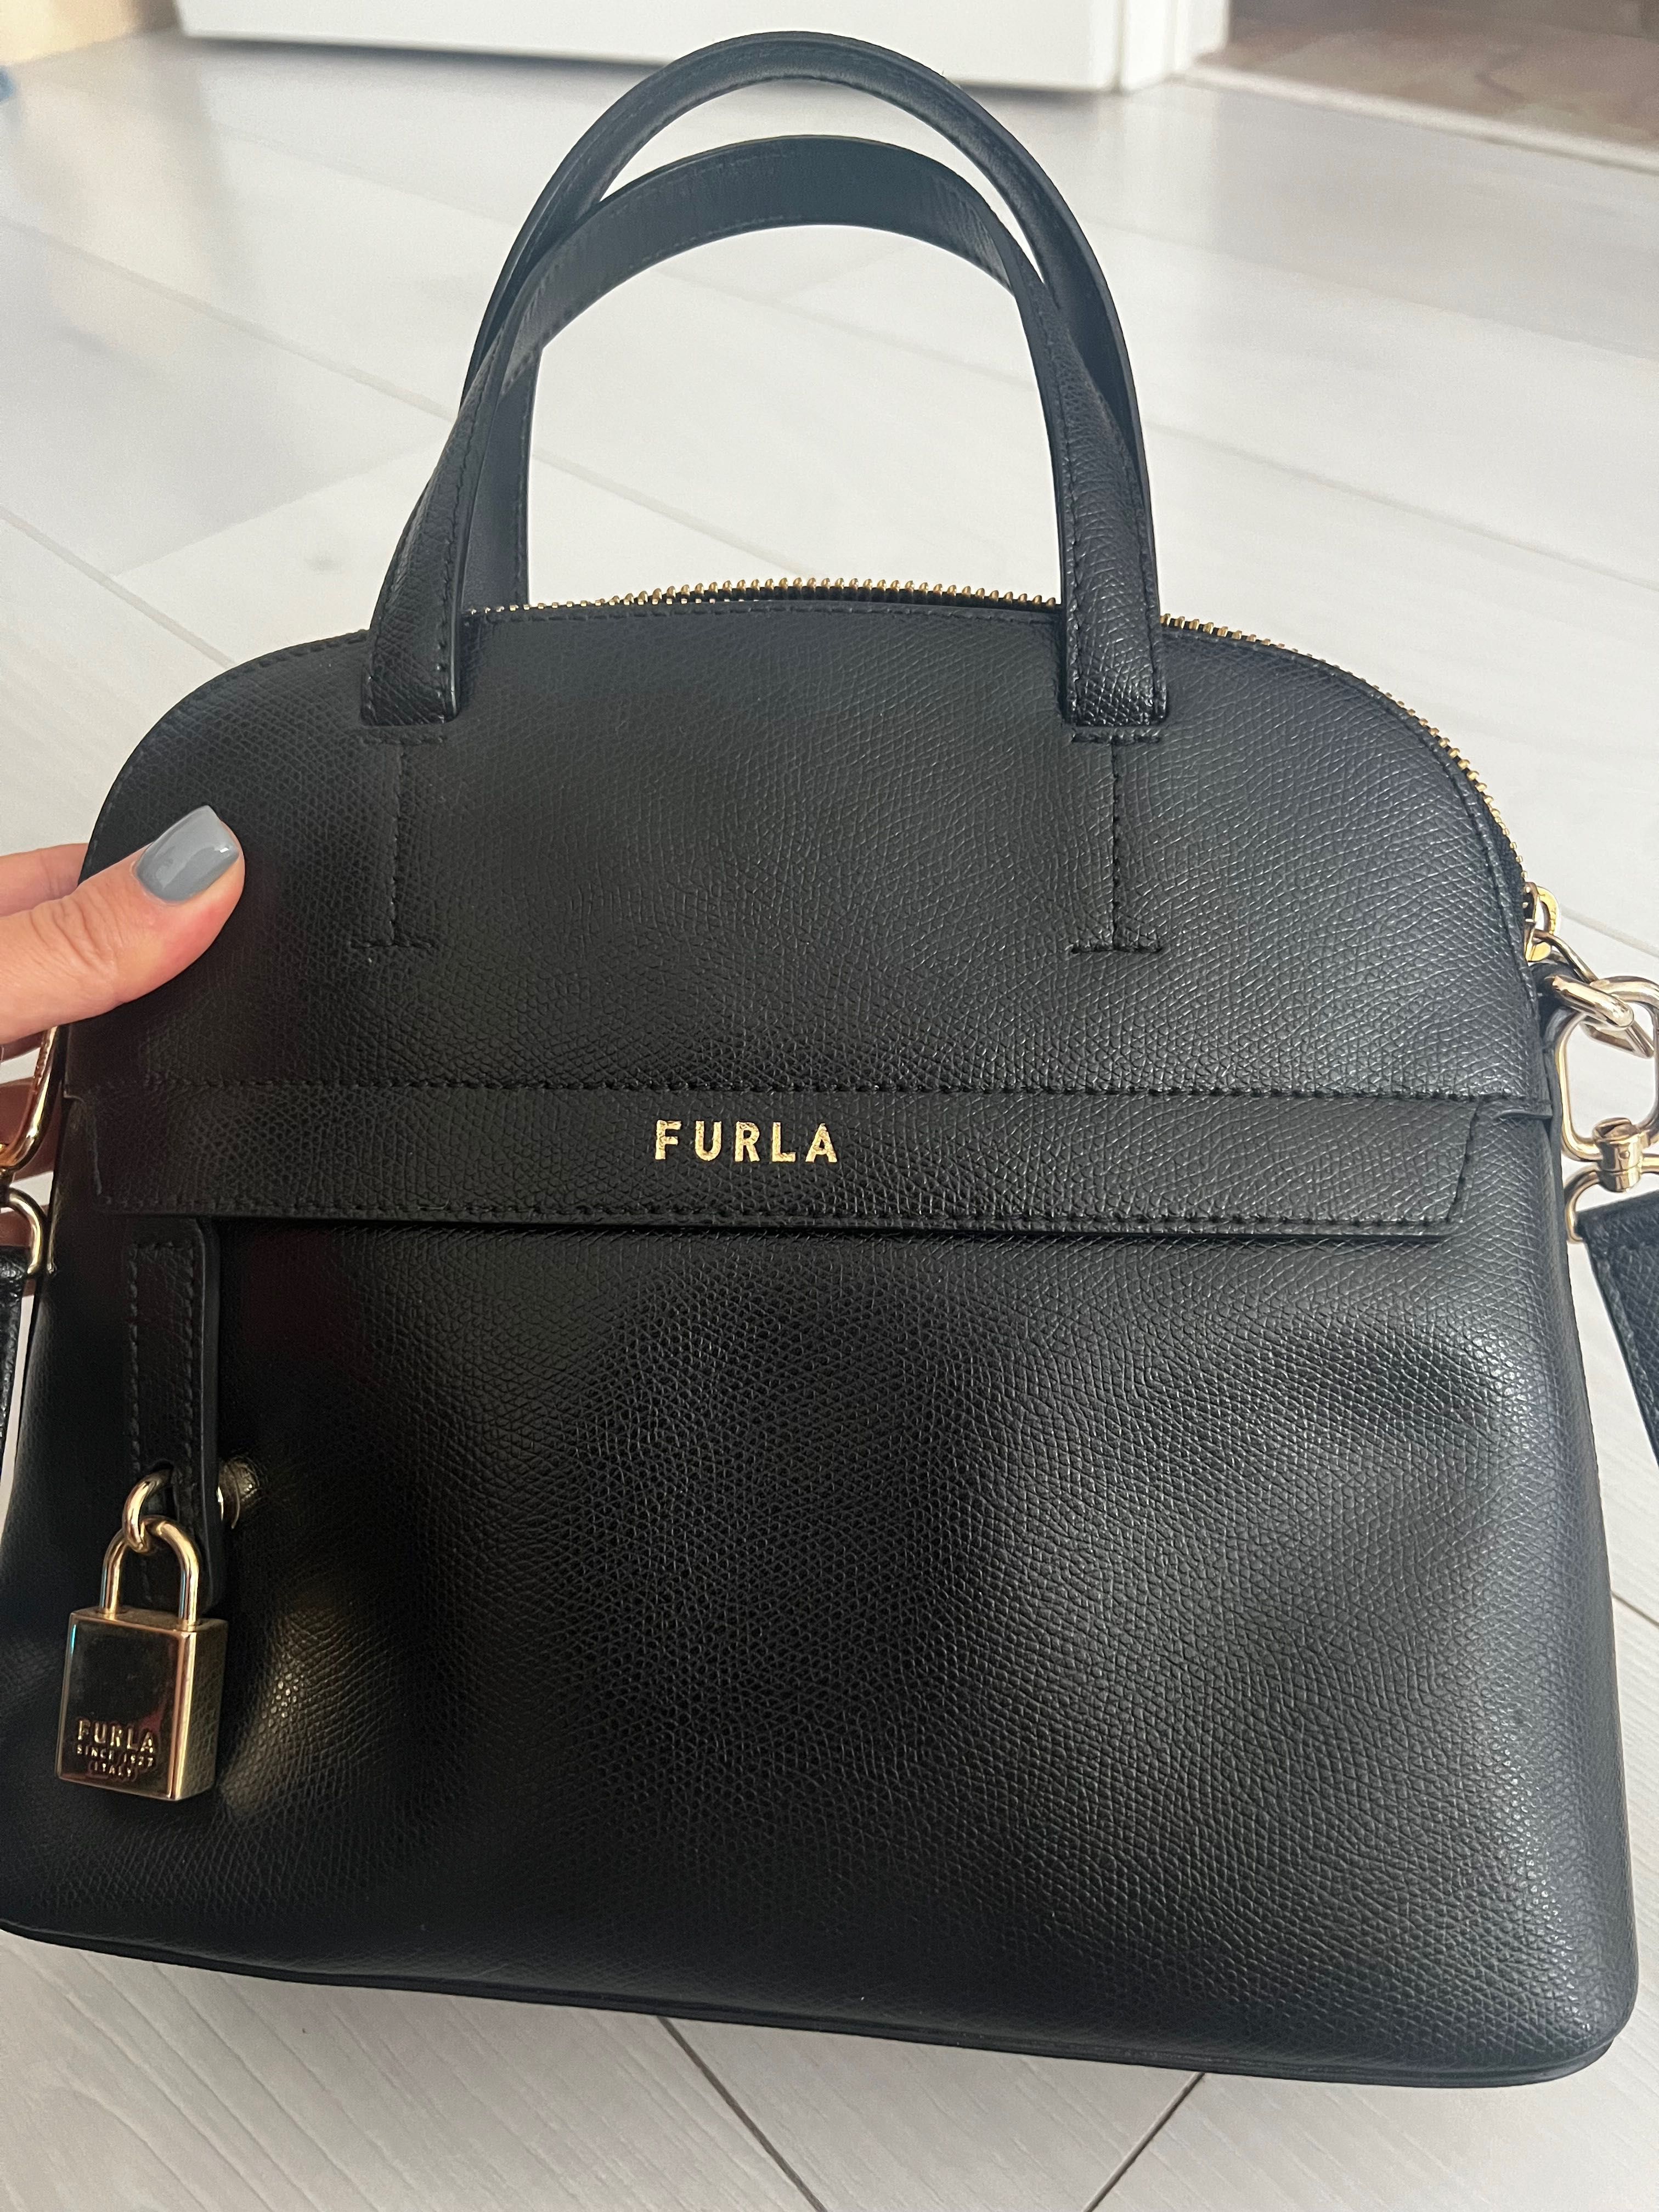 Продам сумку Furla оригинал